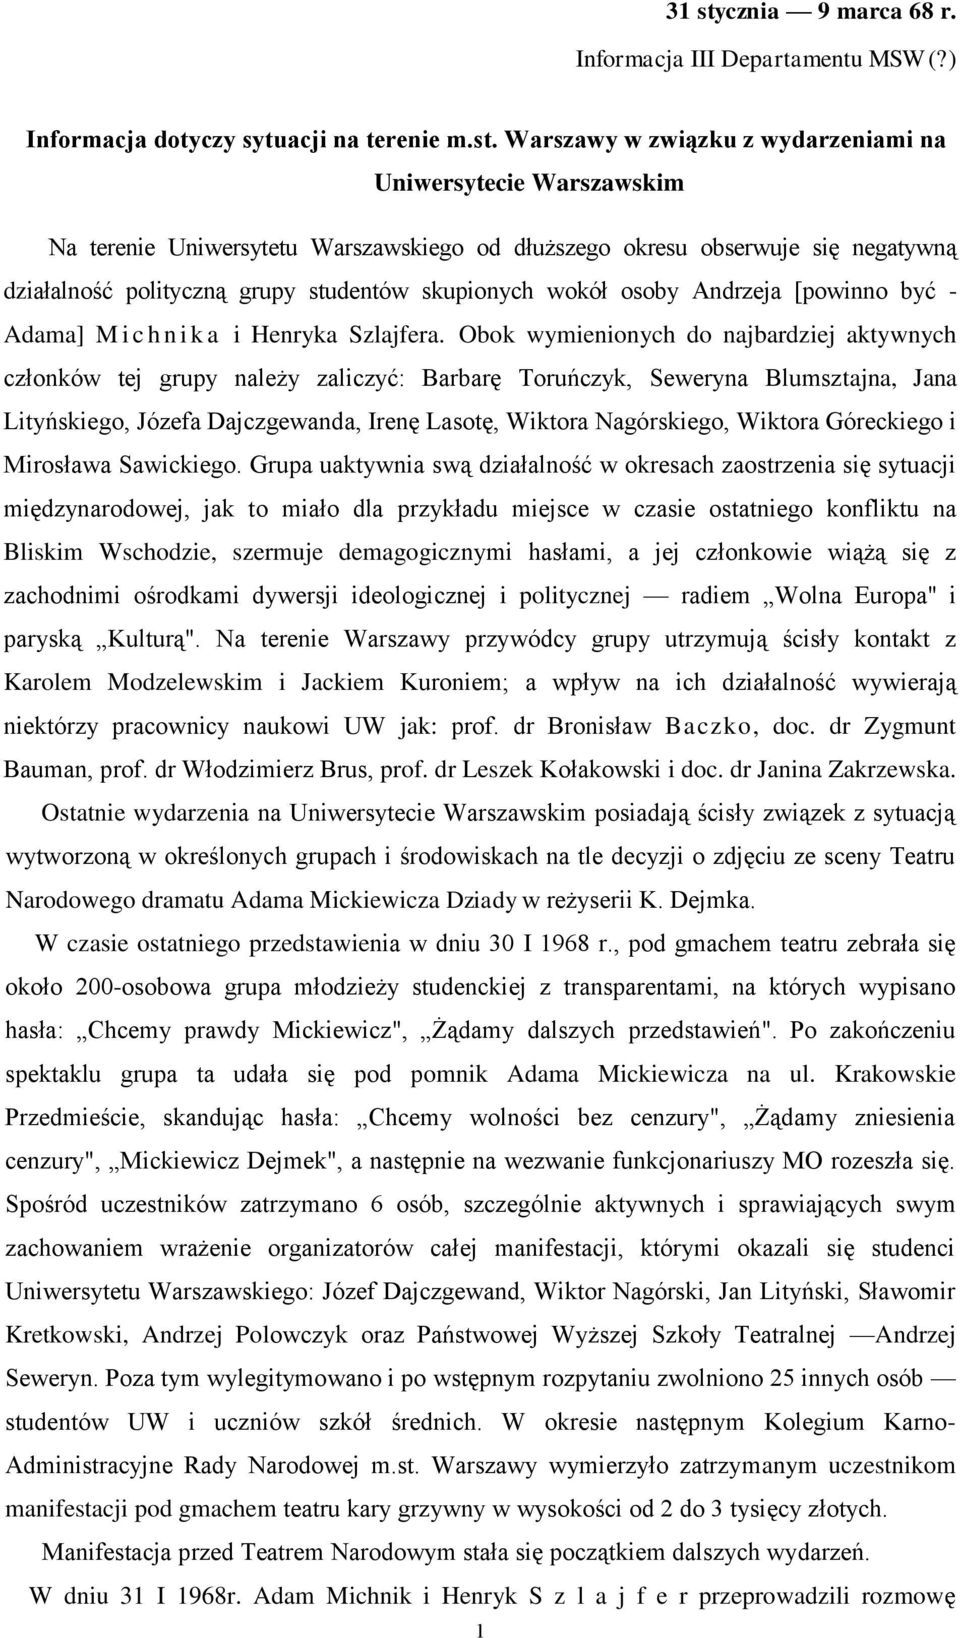 Warszawy w związku z wydarzeniami na Uniwersytecie Warszawskim Na terenie Uniwersytetu Warszawskiego od dłuższego okresu obserwuje się negatywną działalność polityczną grupy studentów skupionych